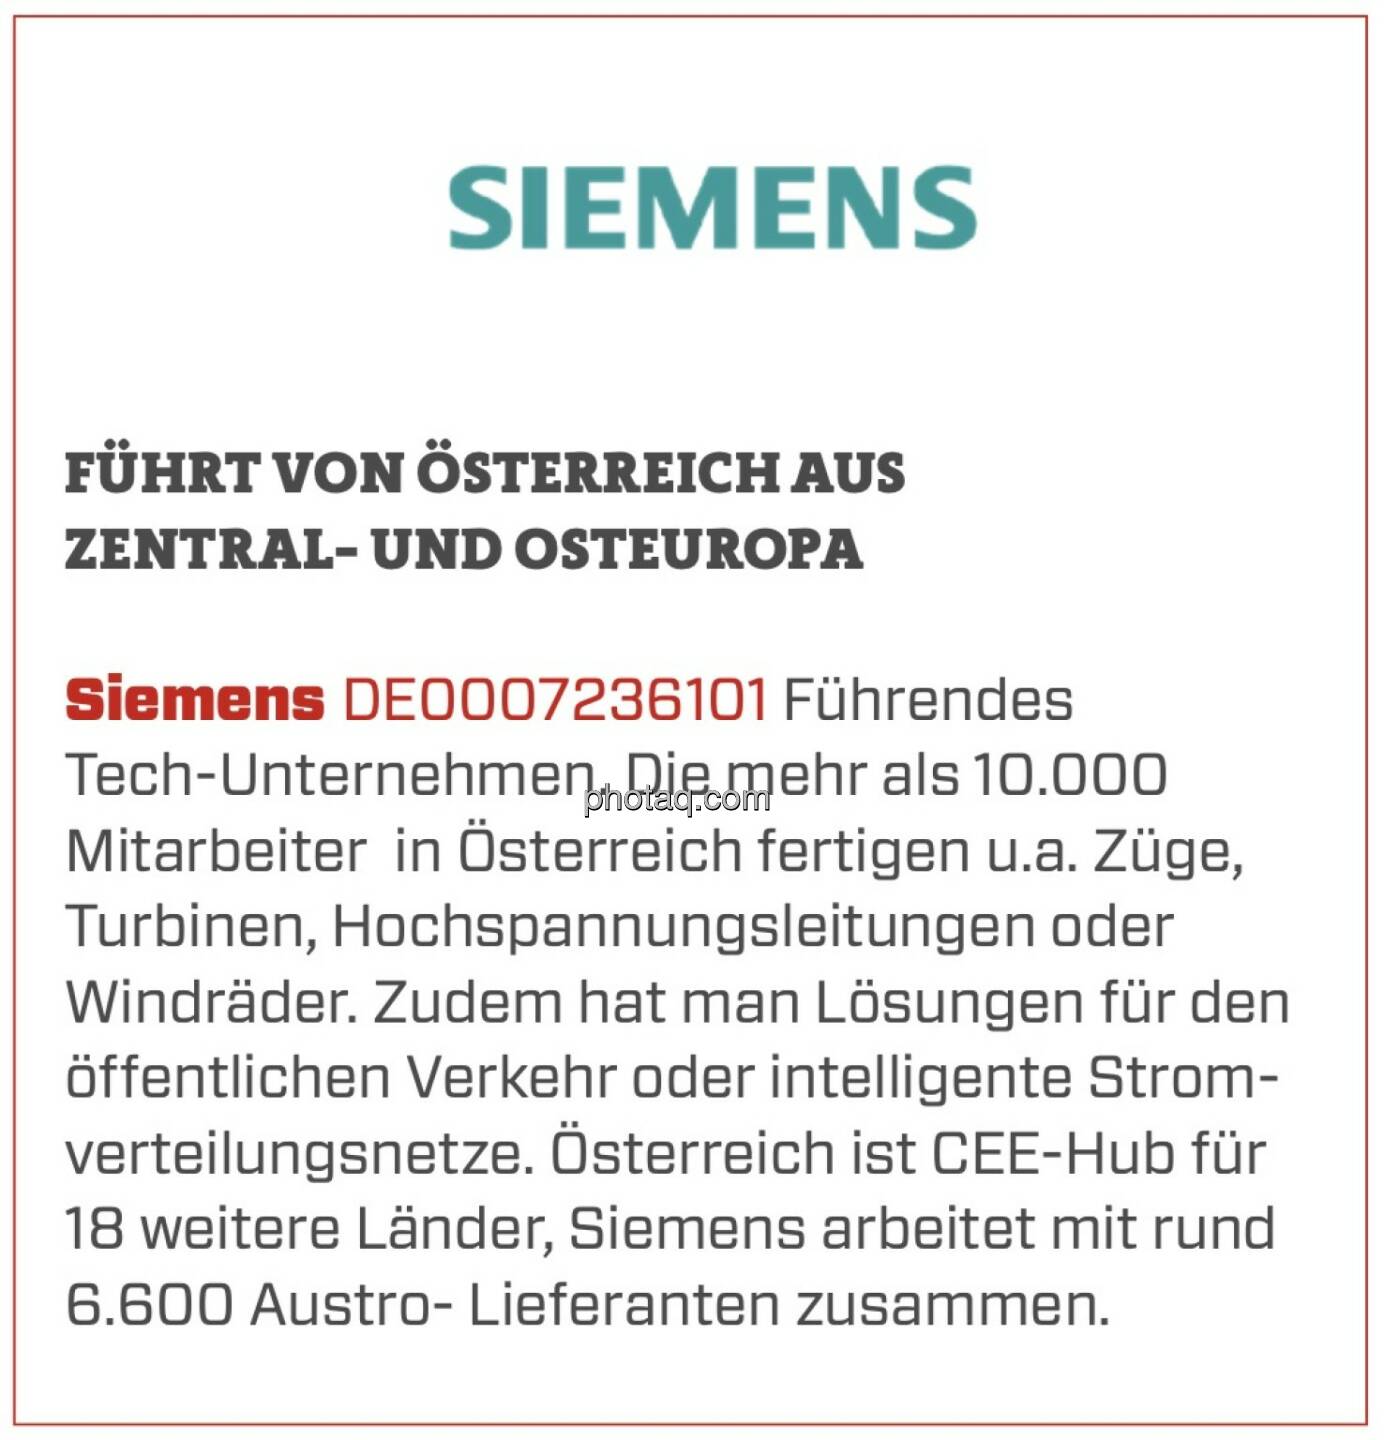 Siemens - Führt von Österreich aus Zentral- und Osteuropa: Führendes Tech-Unternehmen. Die mehr als 10.000 Mitarbeiter  in Österreich fertigen u.a. Züge, Turbinen, Hochspannungsleitungen oder Windräder. Zudem hat man Lösungen für den öffentlichen Verkehr oder intelligente Stromverteilungsnetze. Österreich ist CEE-Hub für 18 weitere Länder, Siemens arbeitet mit rund 6.600 Austro- Lieferanten zusammen.